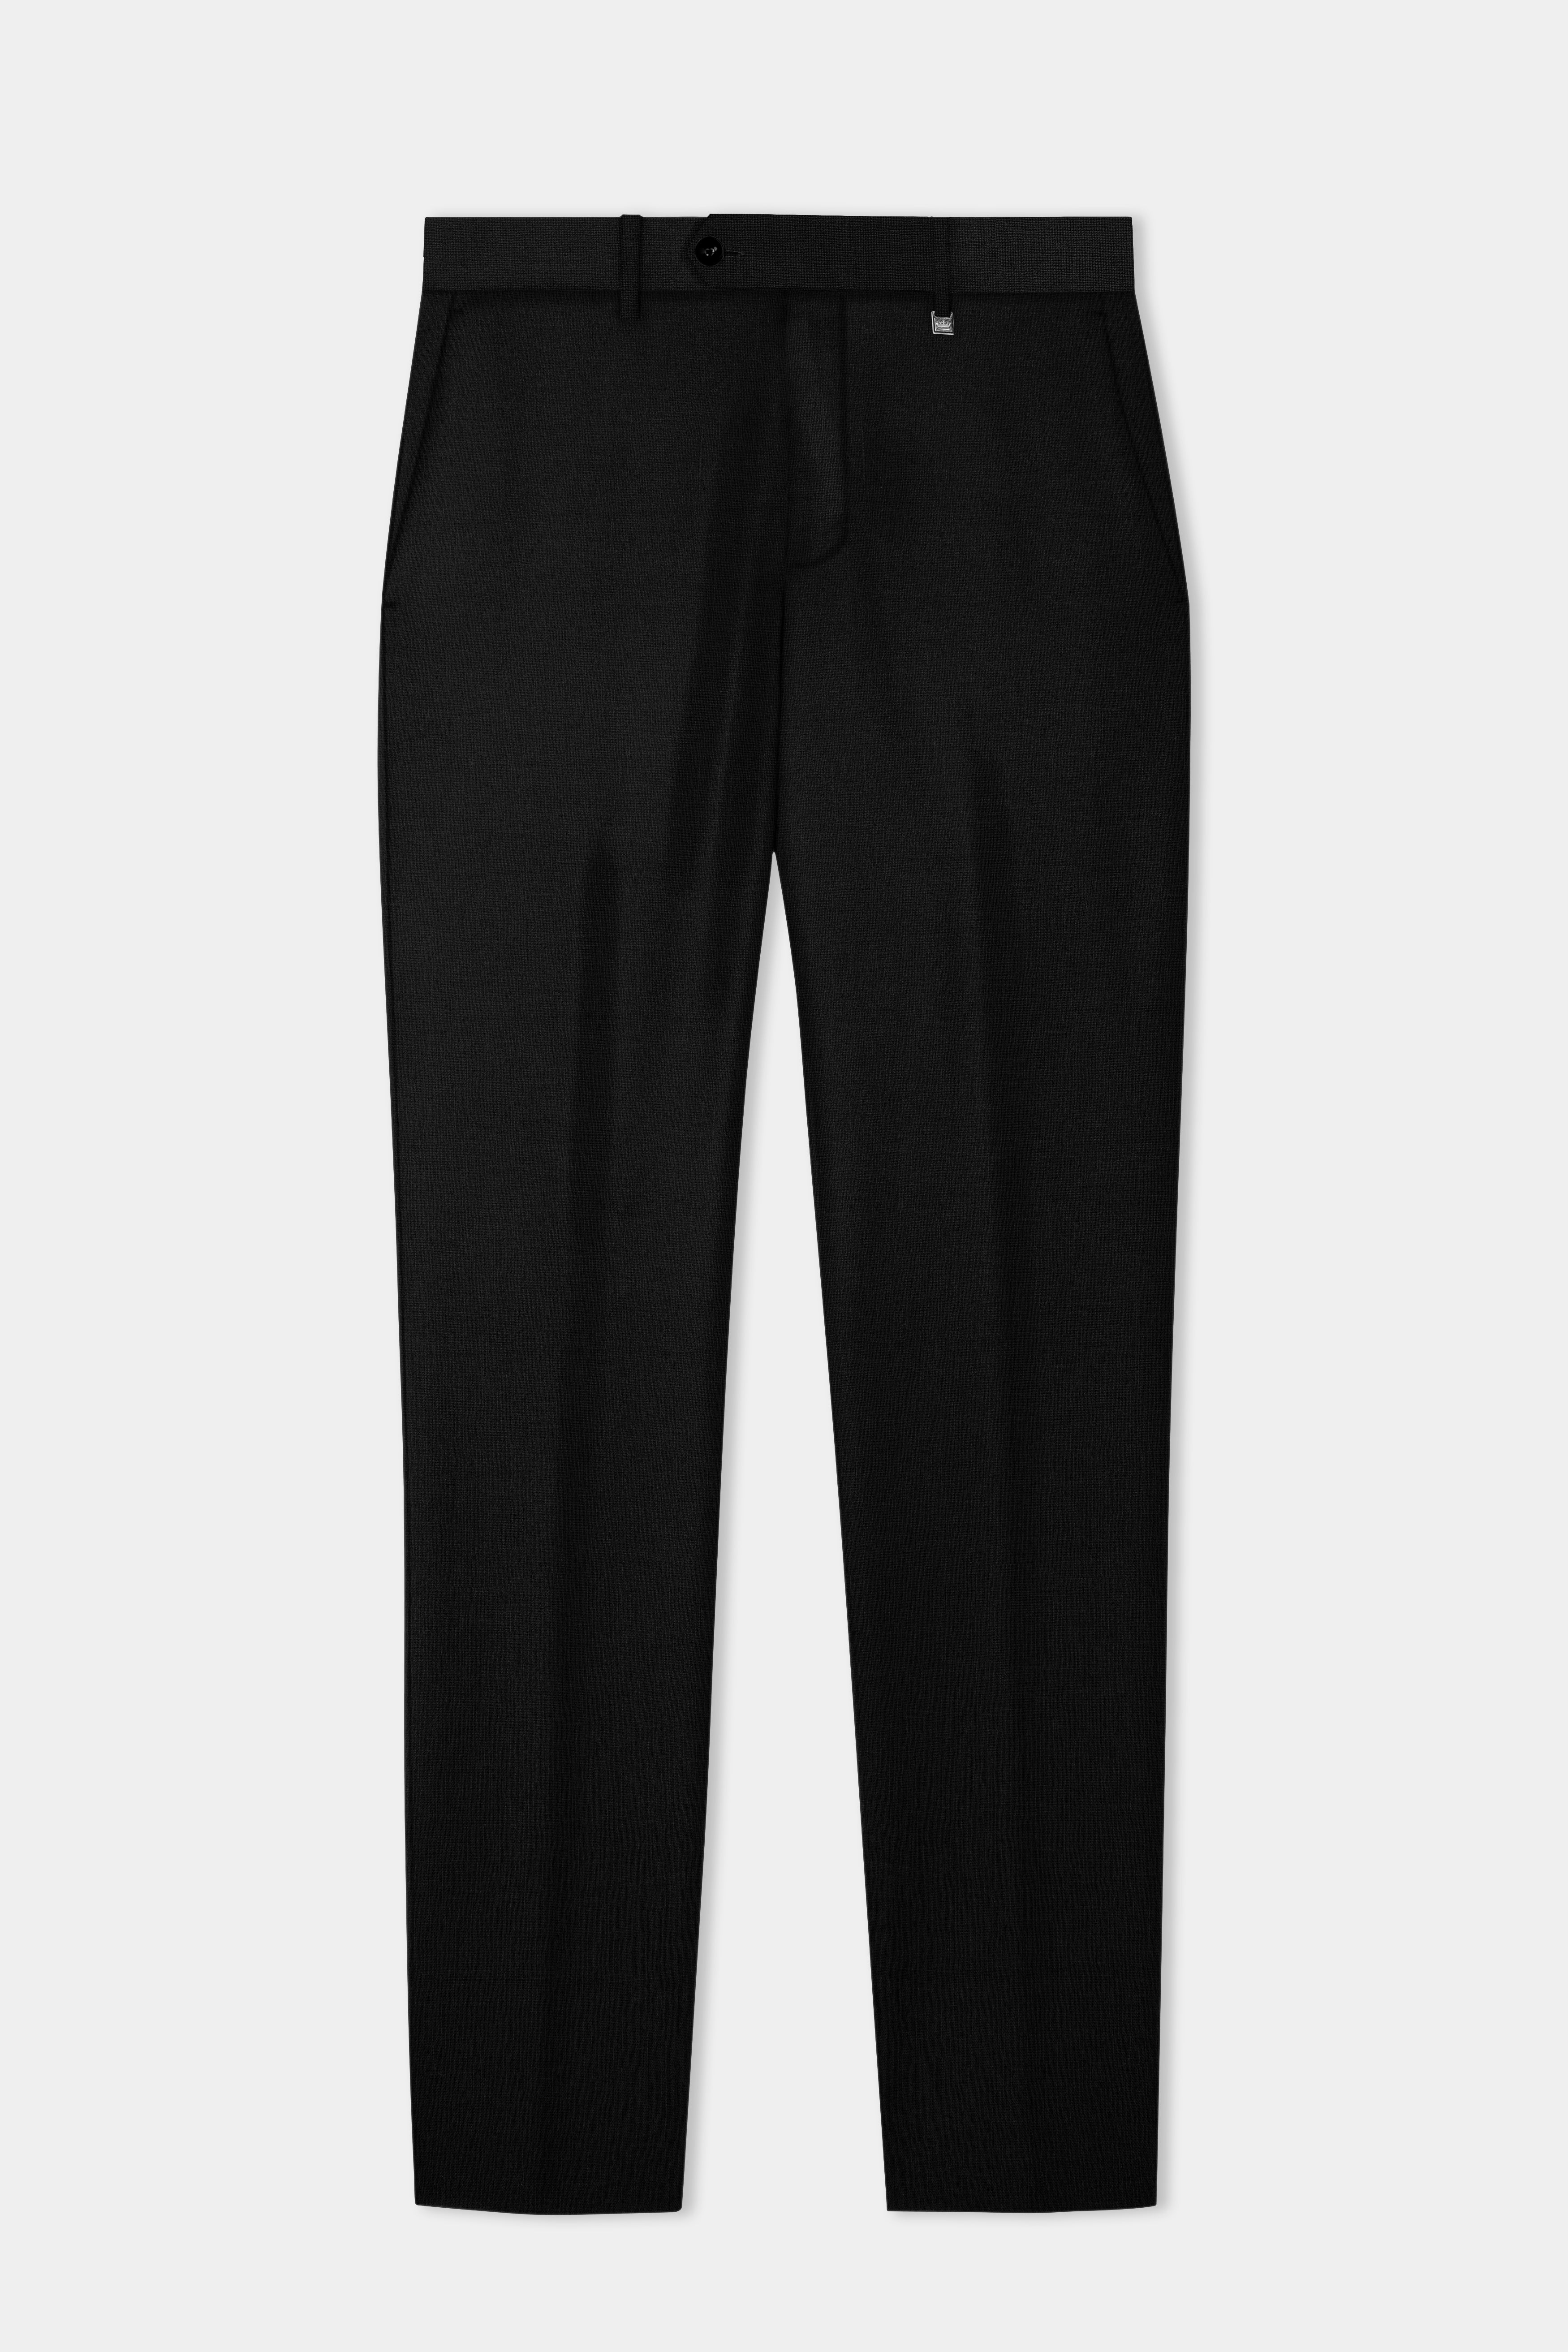 Jade Black Solid Tweed Pant